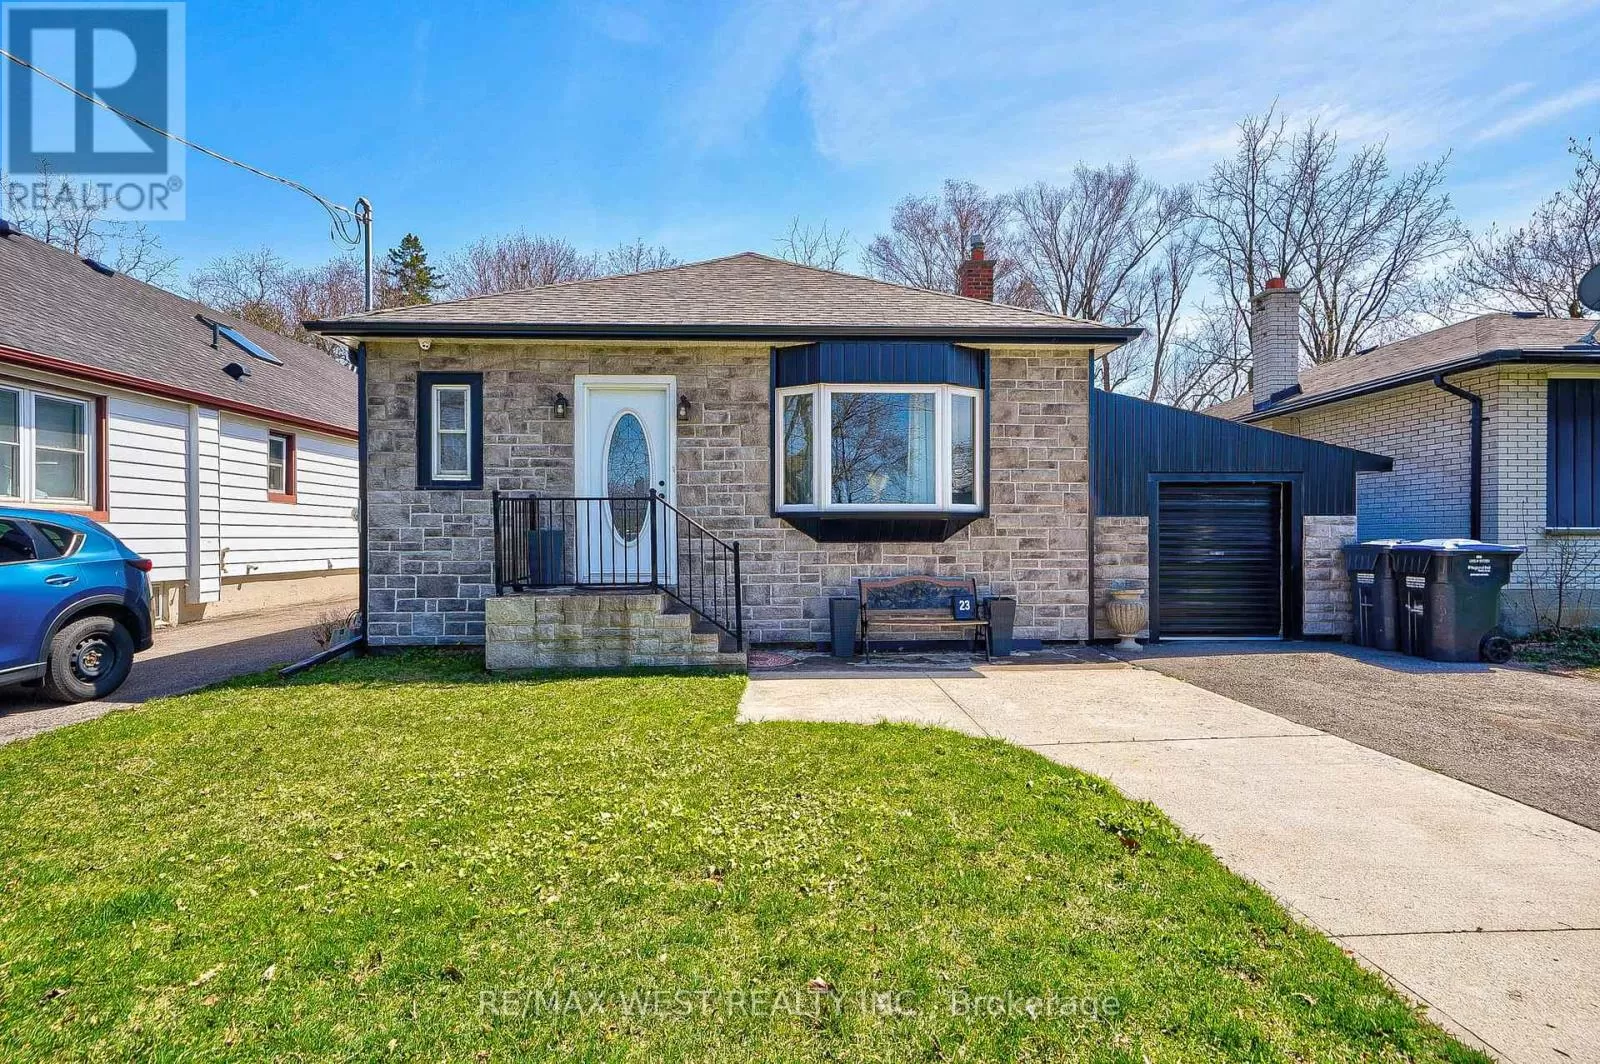 House for rent: 23 Fraser Ave, Brampton, Ontario L5B 2K9